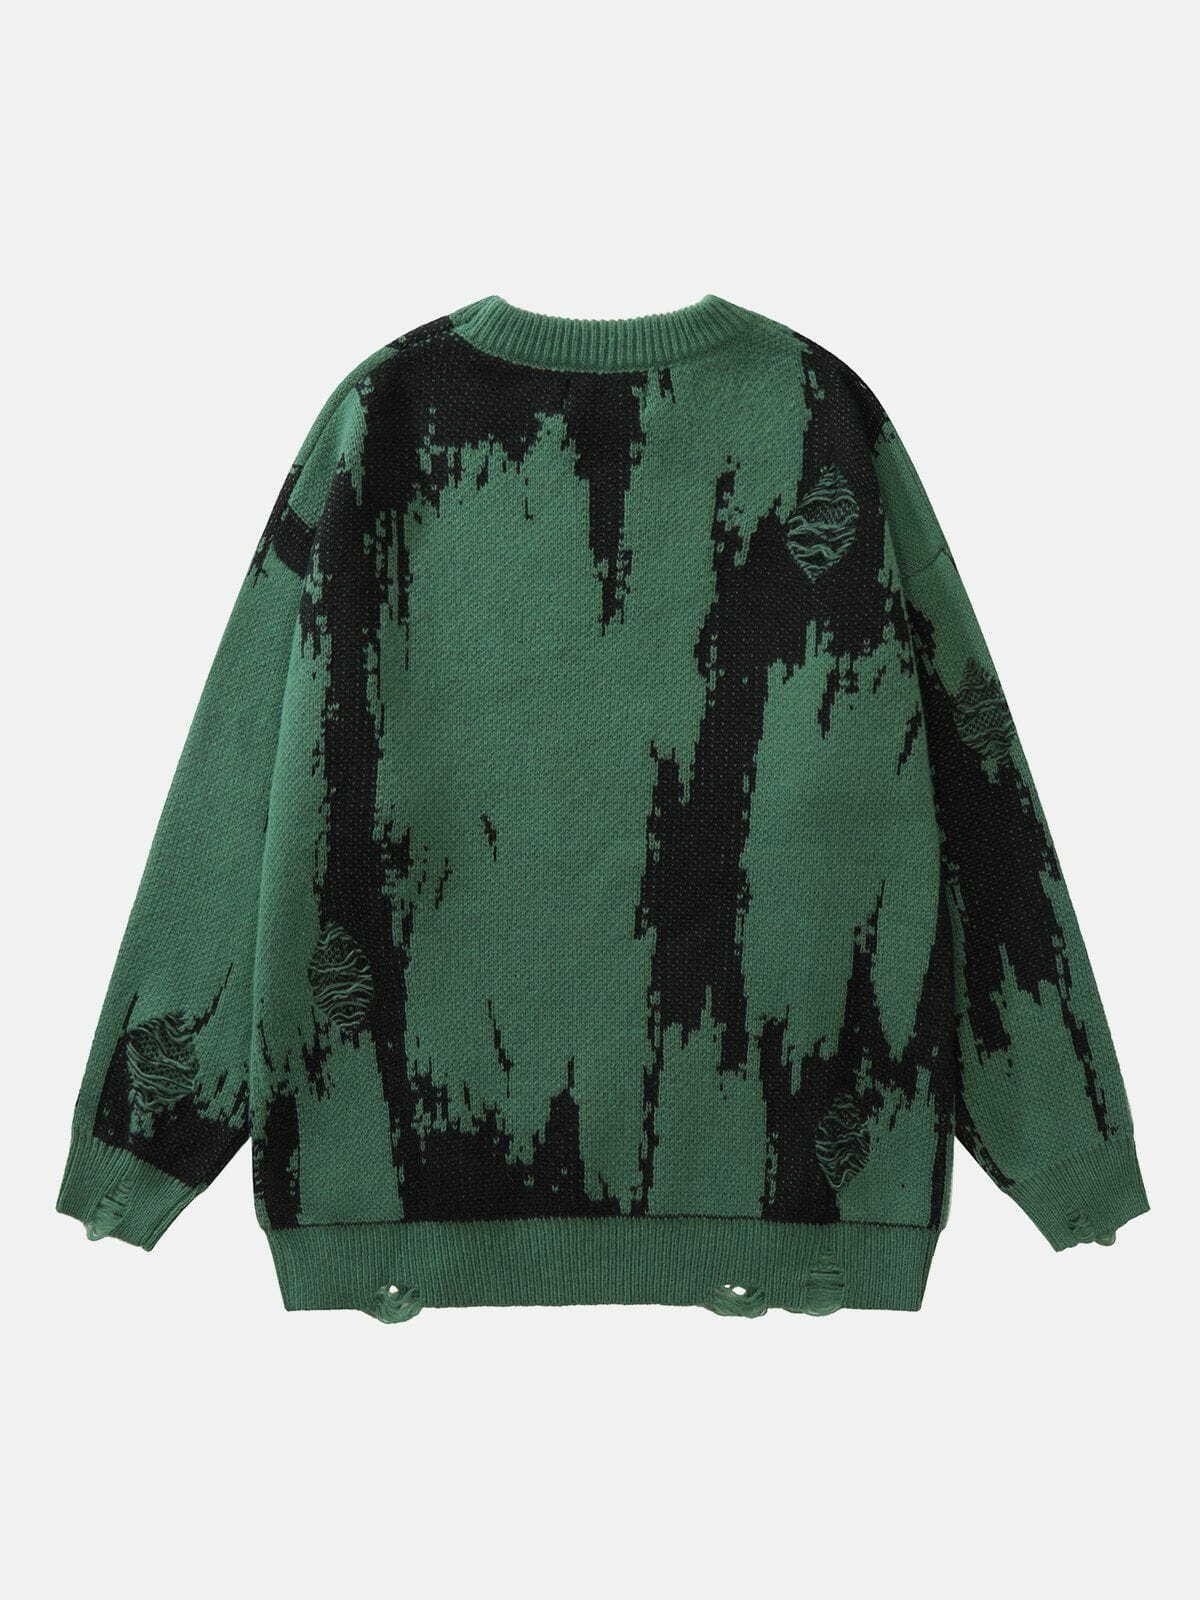 trendy tie dye letter sweater edgy & vibrant streetwear 1367